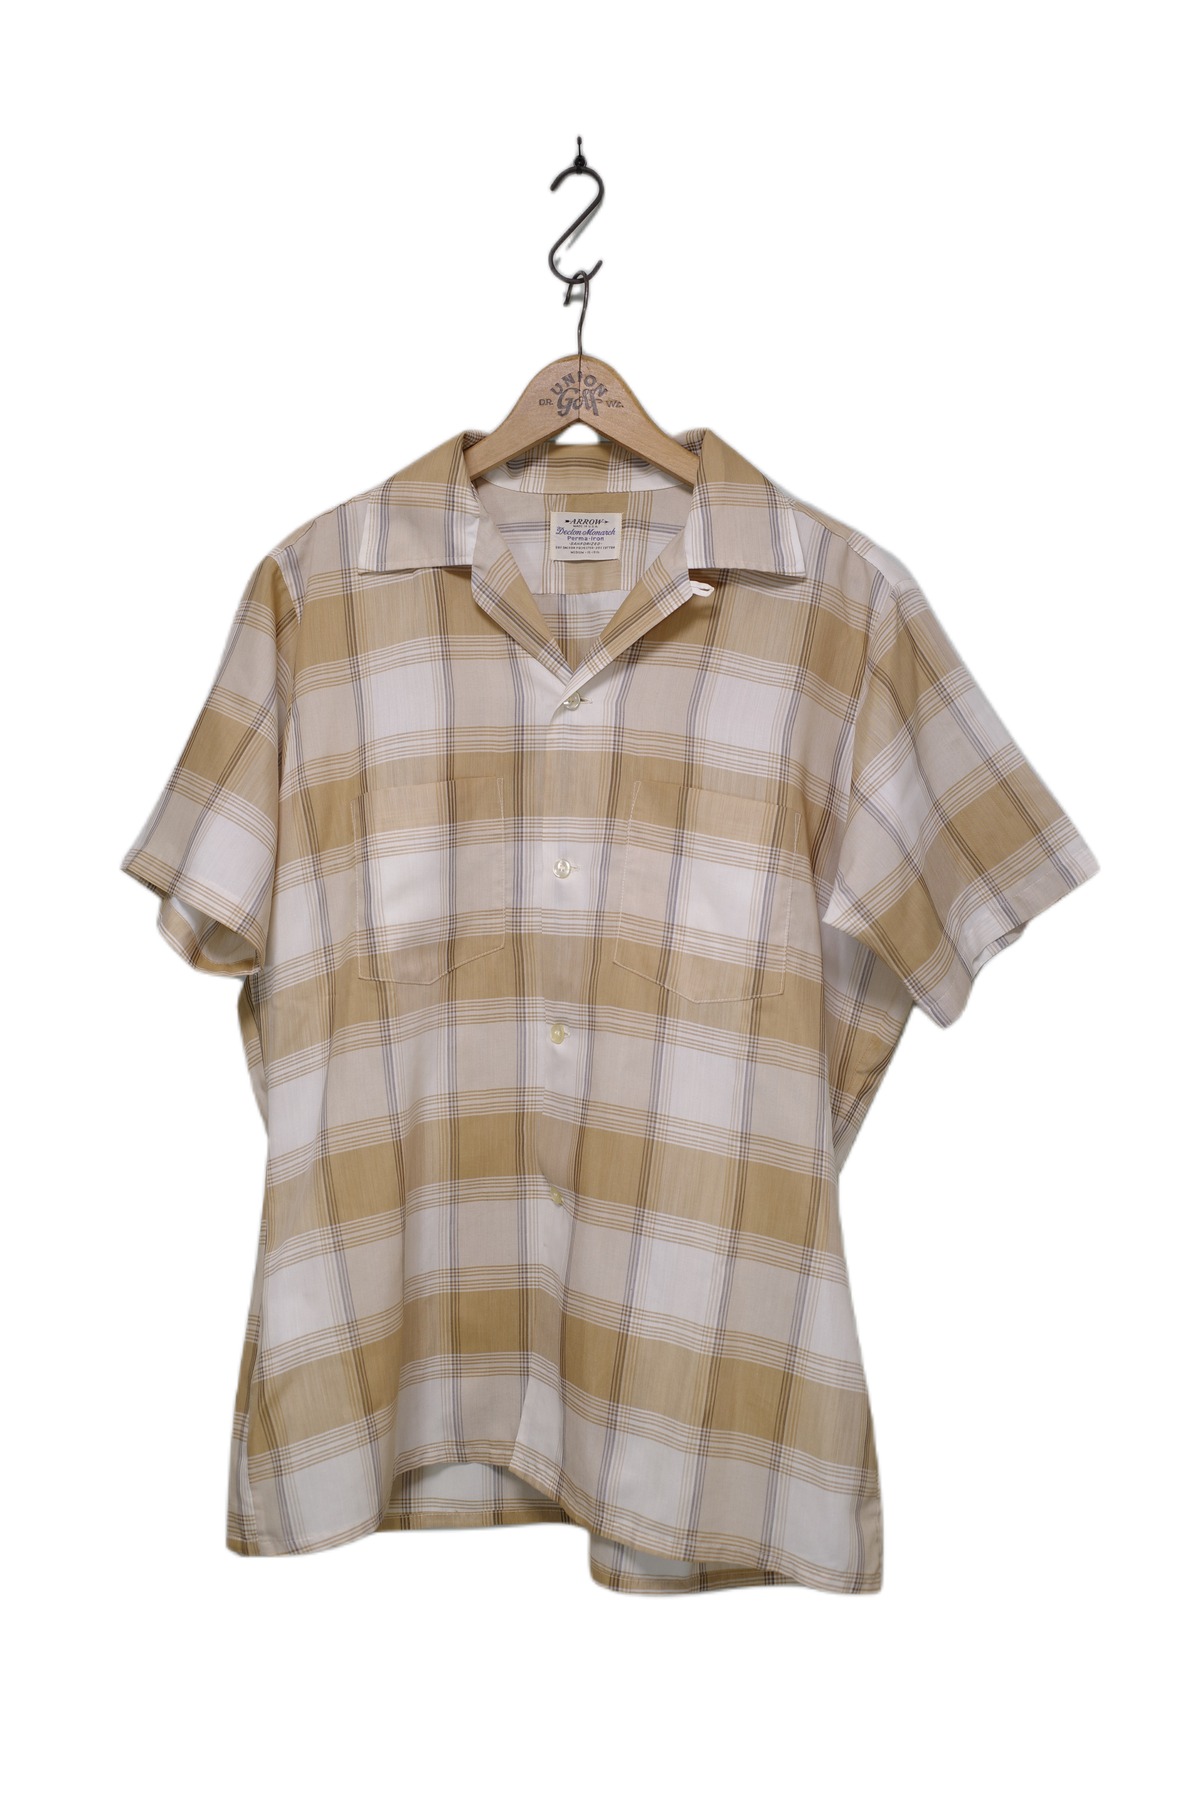 60s ARROW check shirt | pete To roni -vintage&antique select shop-